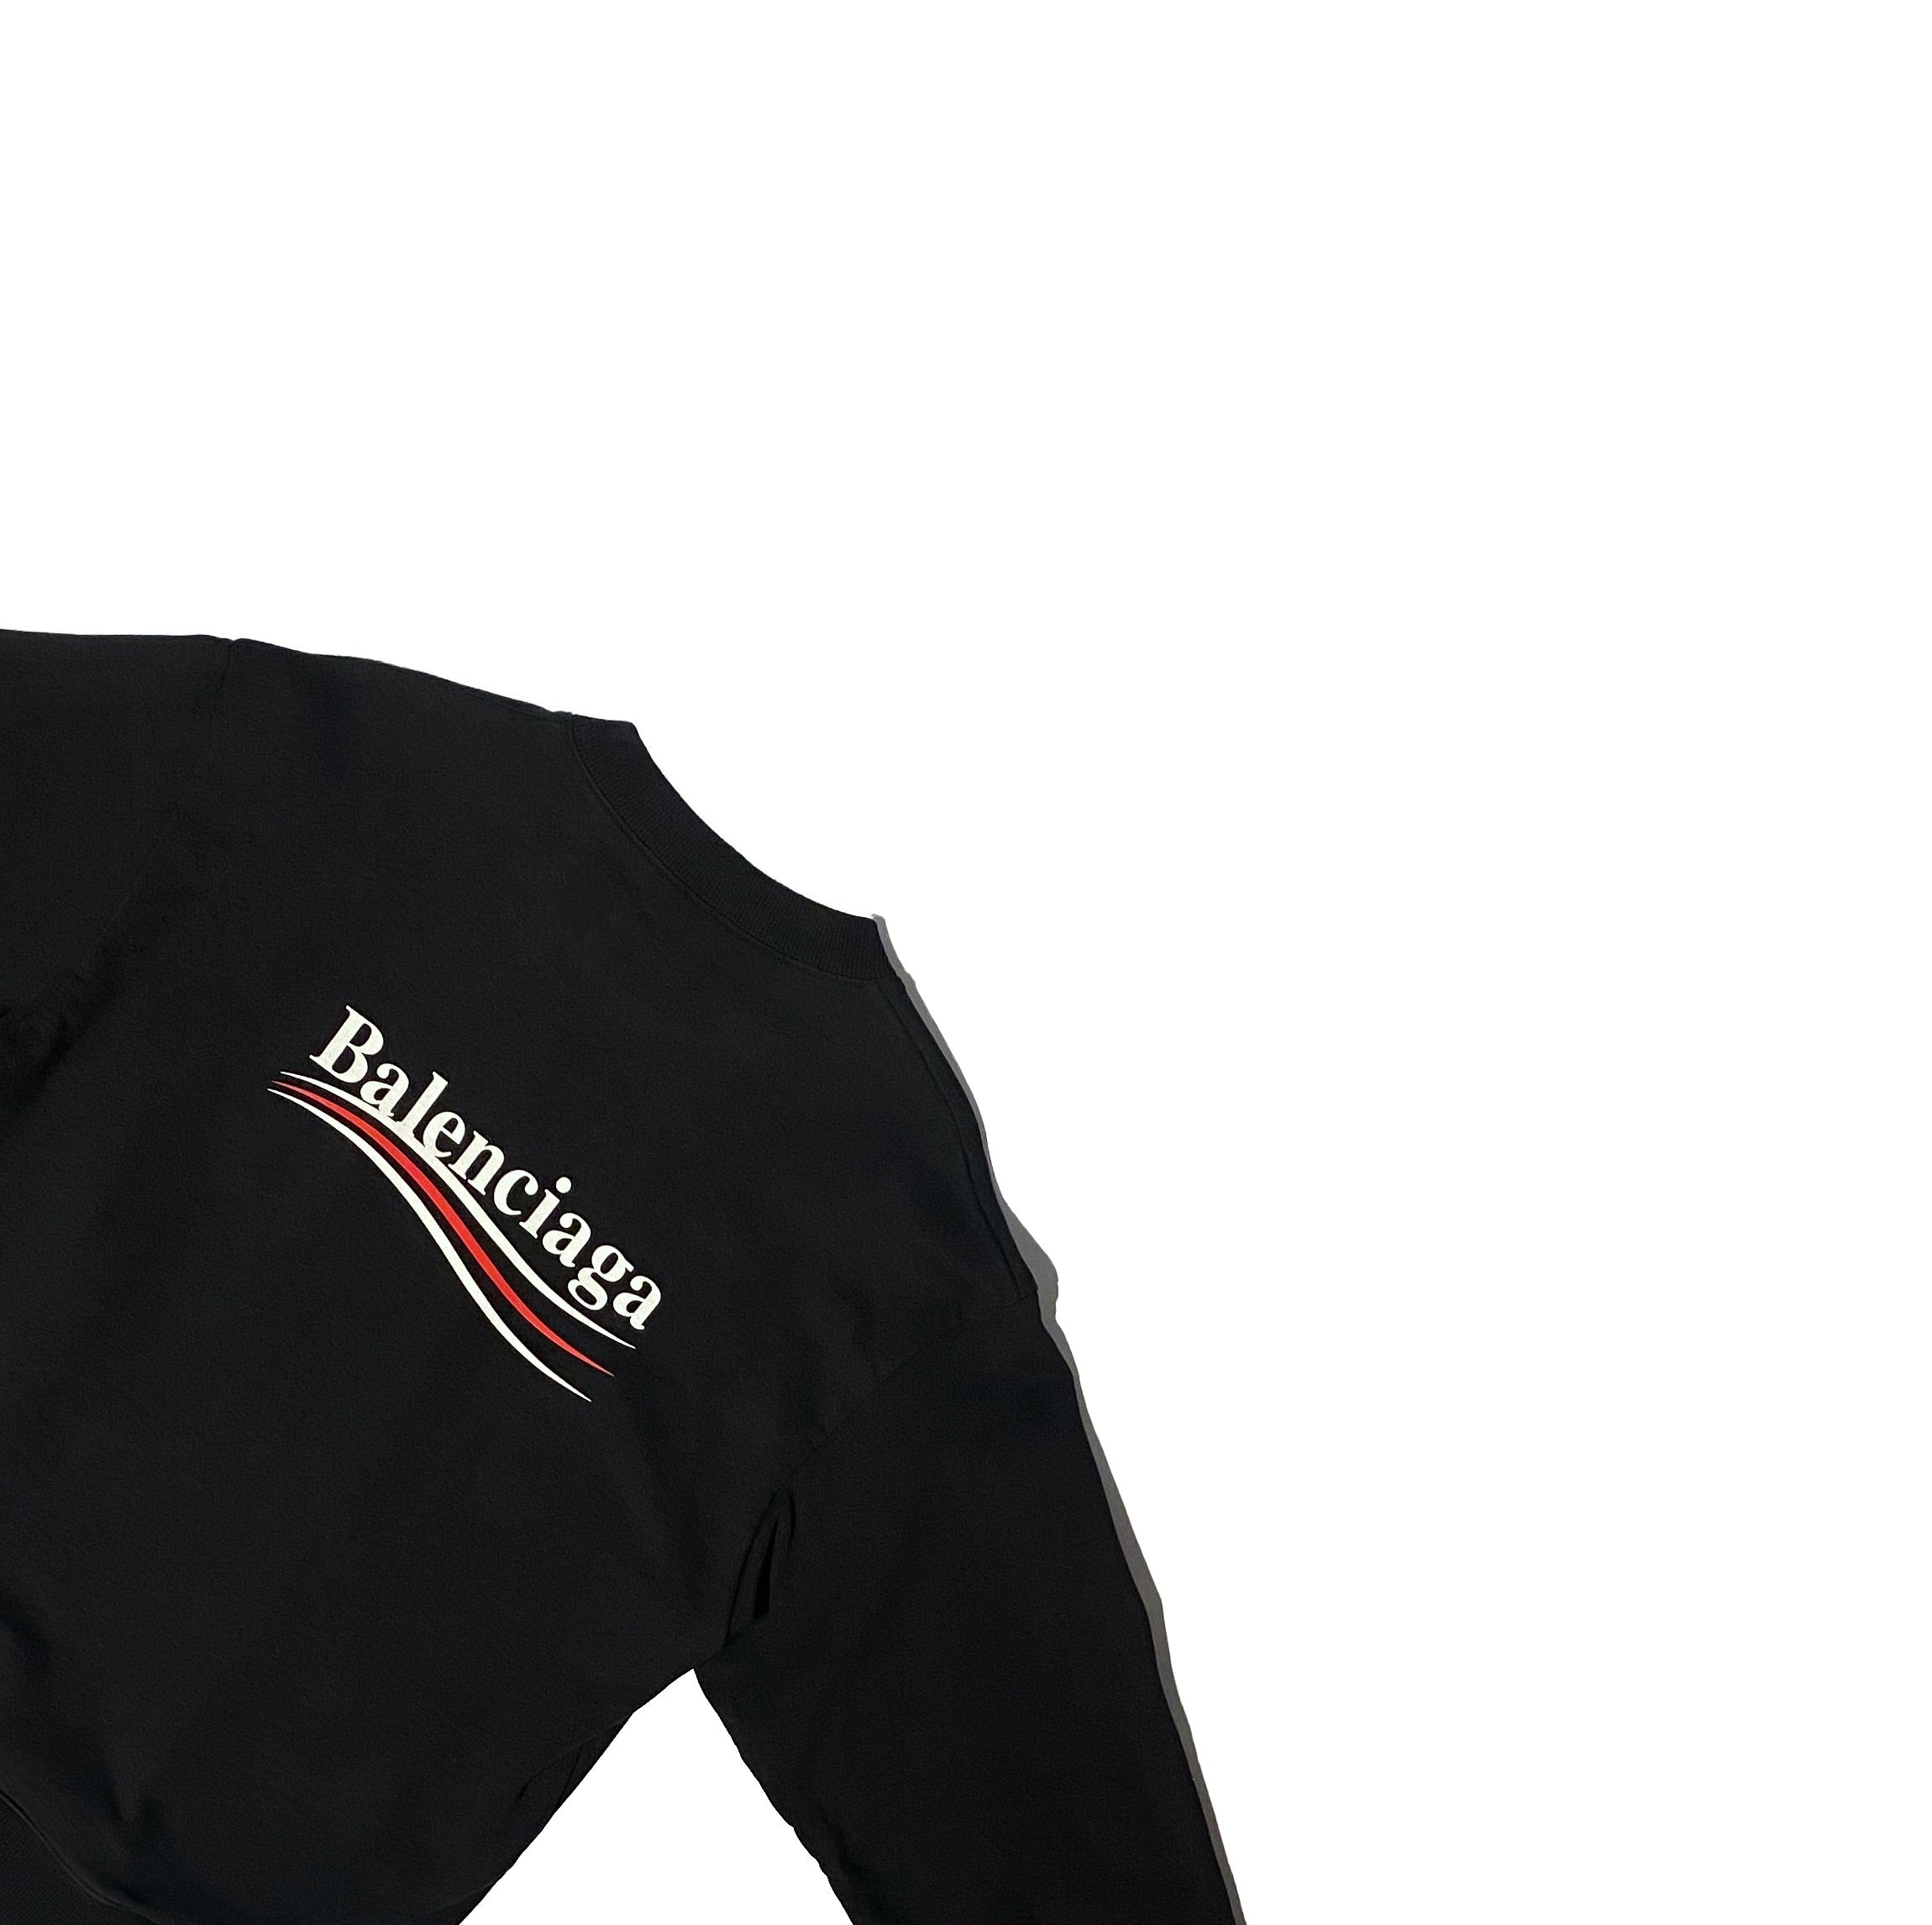 Balenciaga Campaign Sweater - Size S